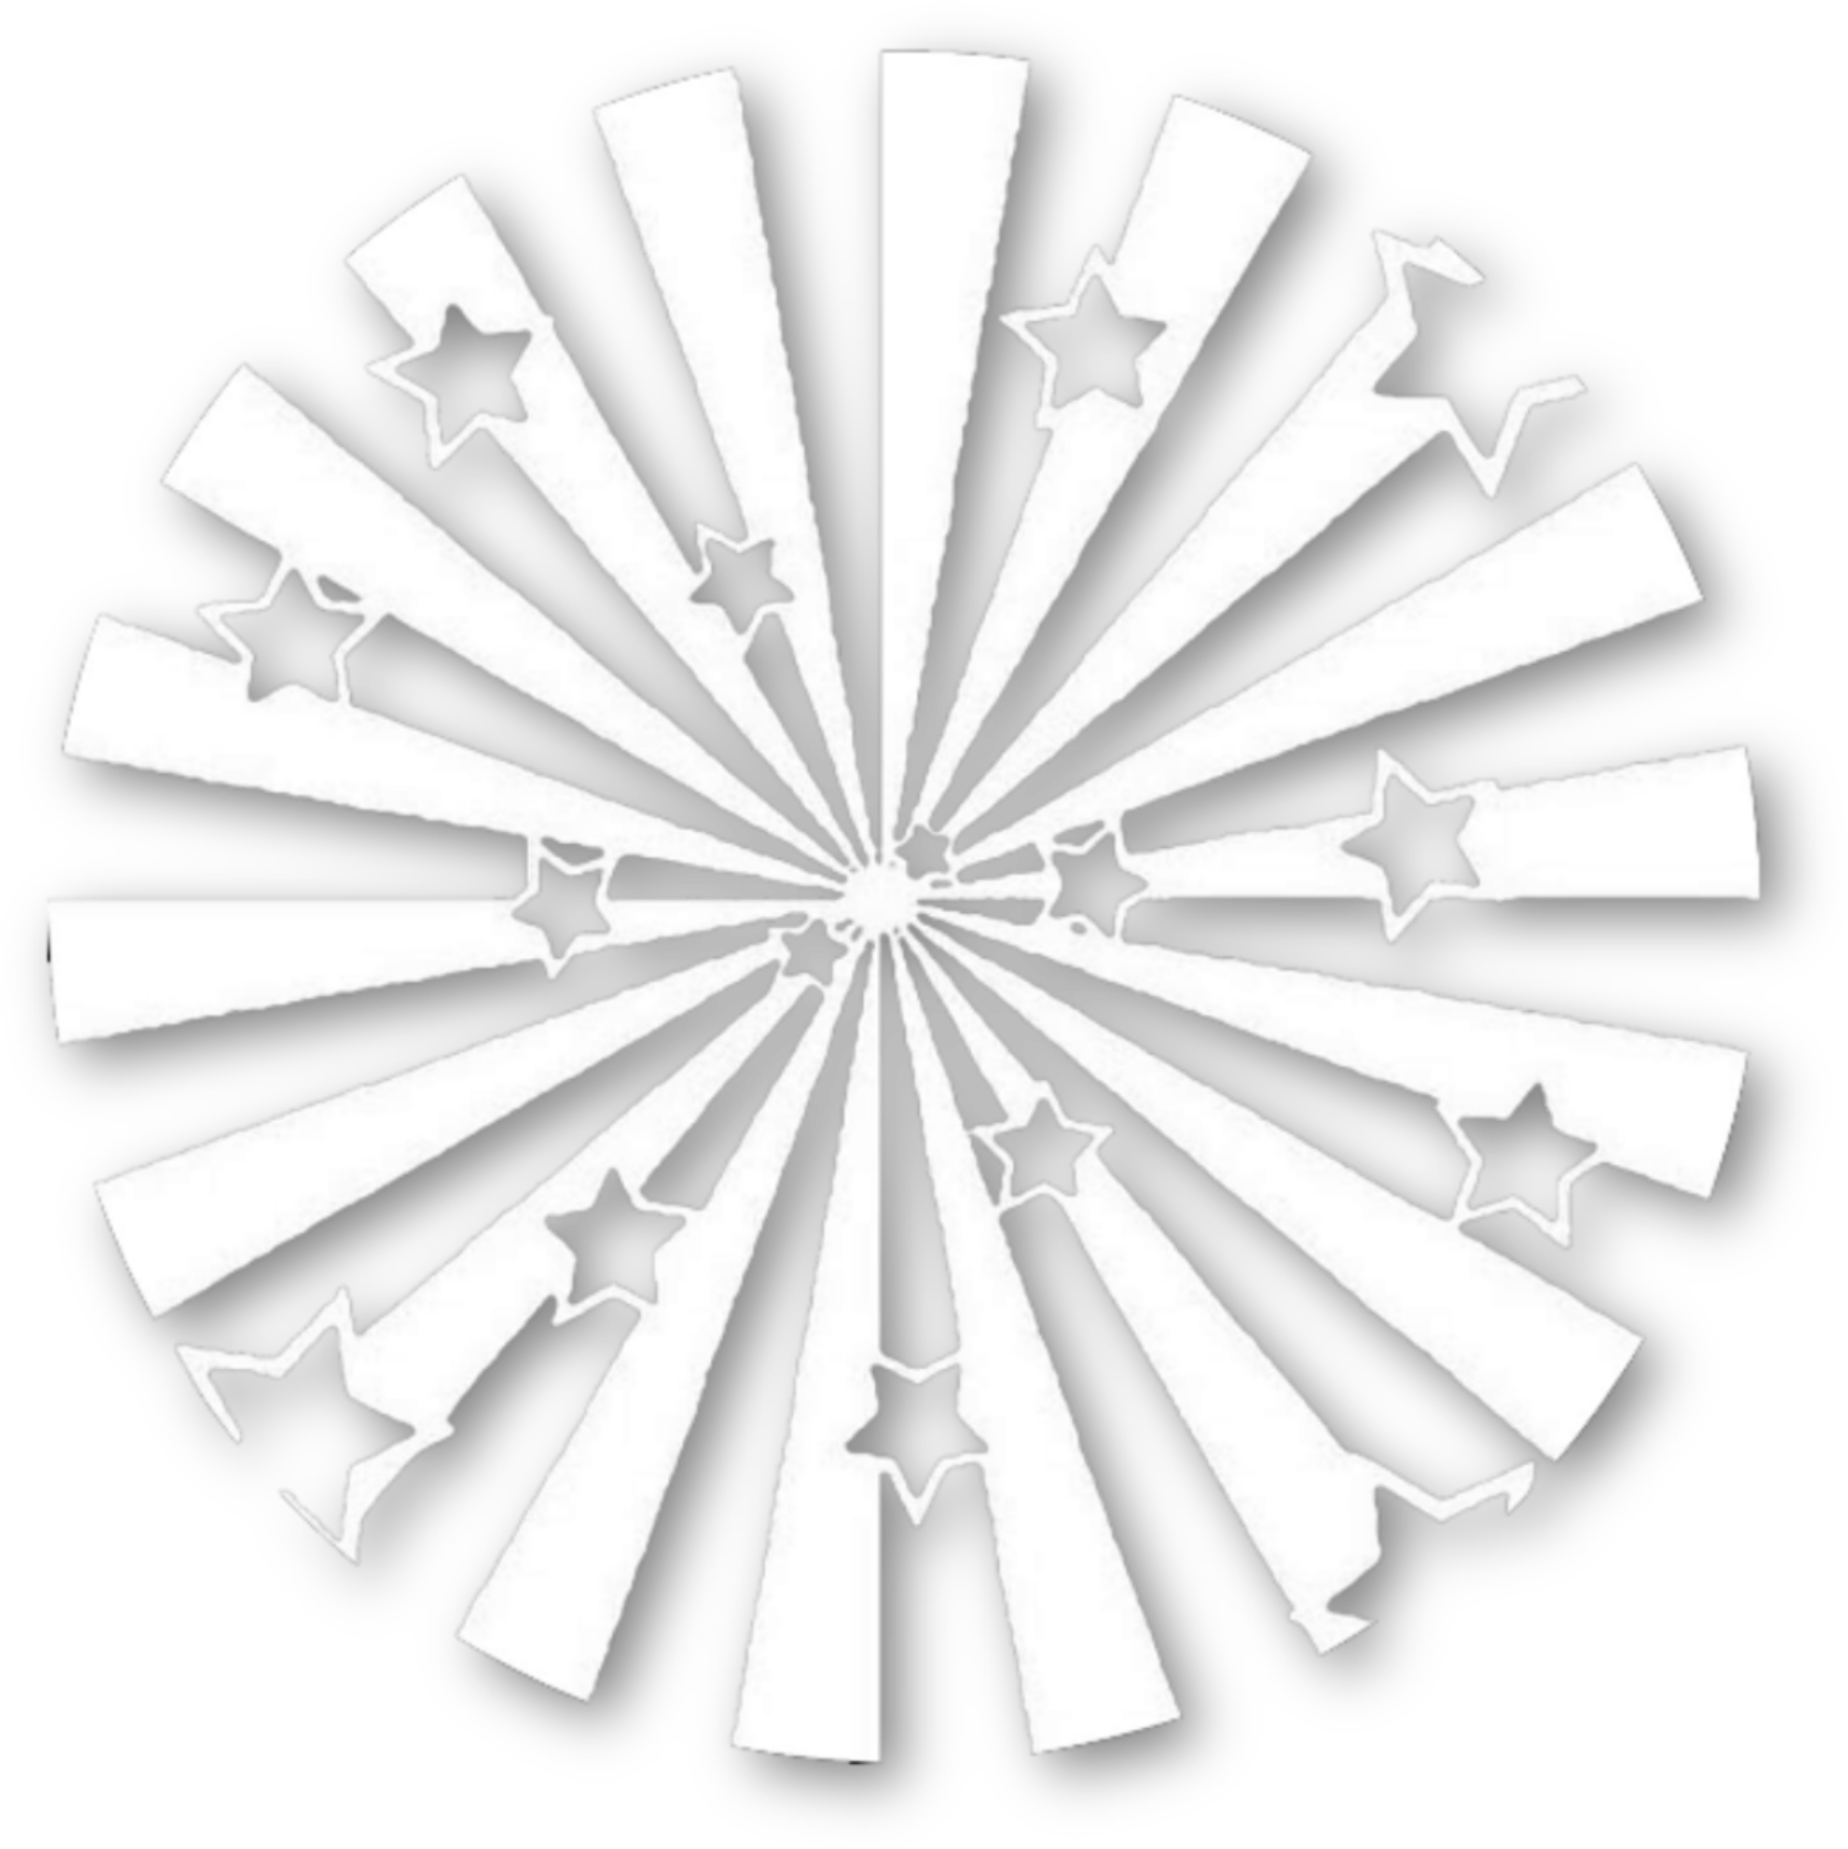 Blackand White Starburst Pattern PNG image